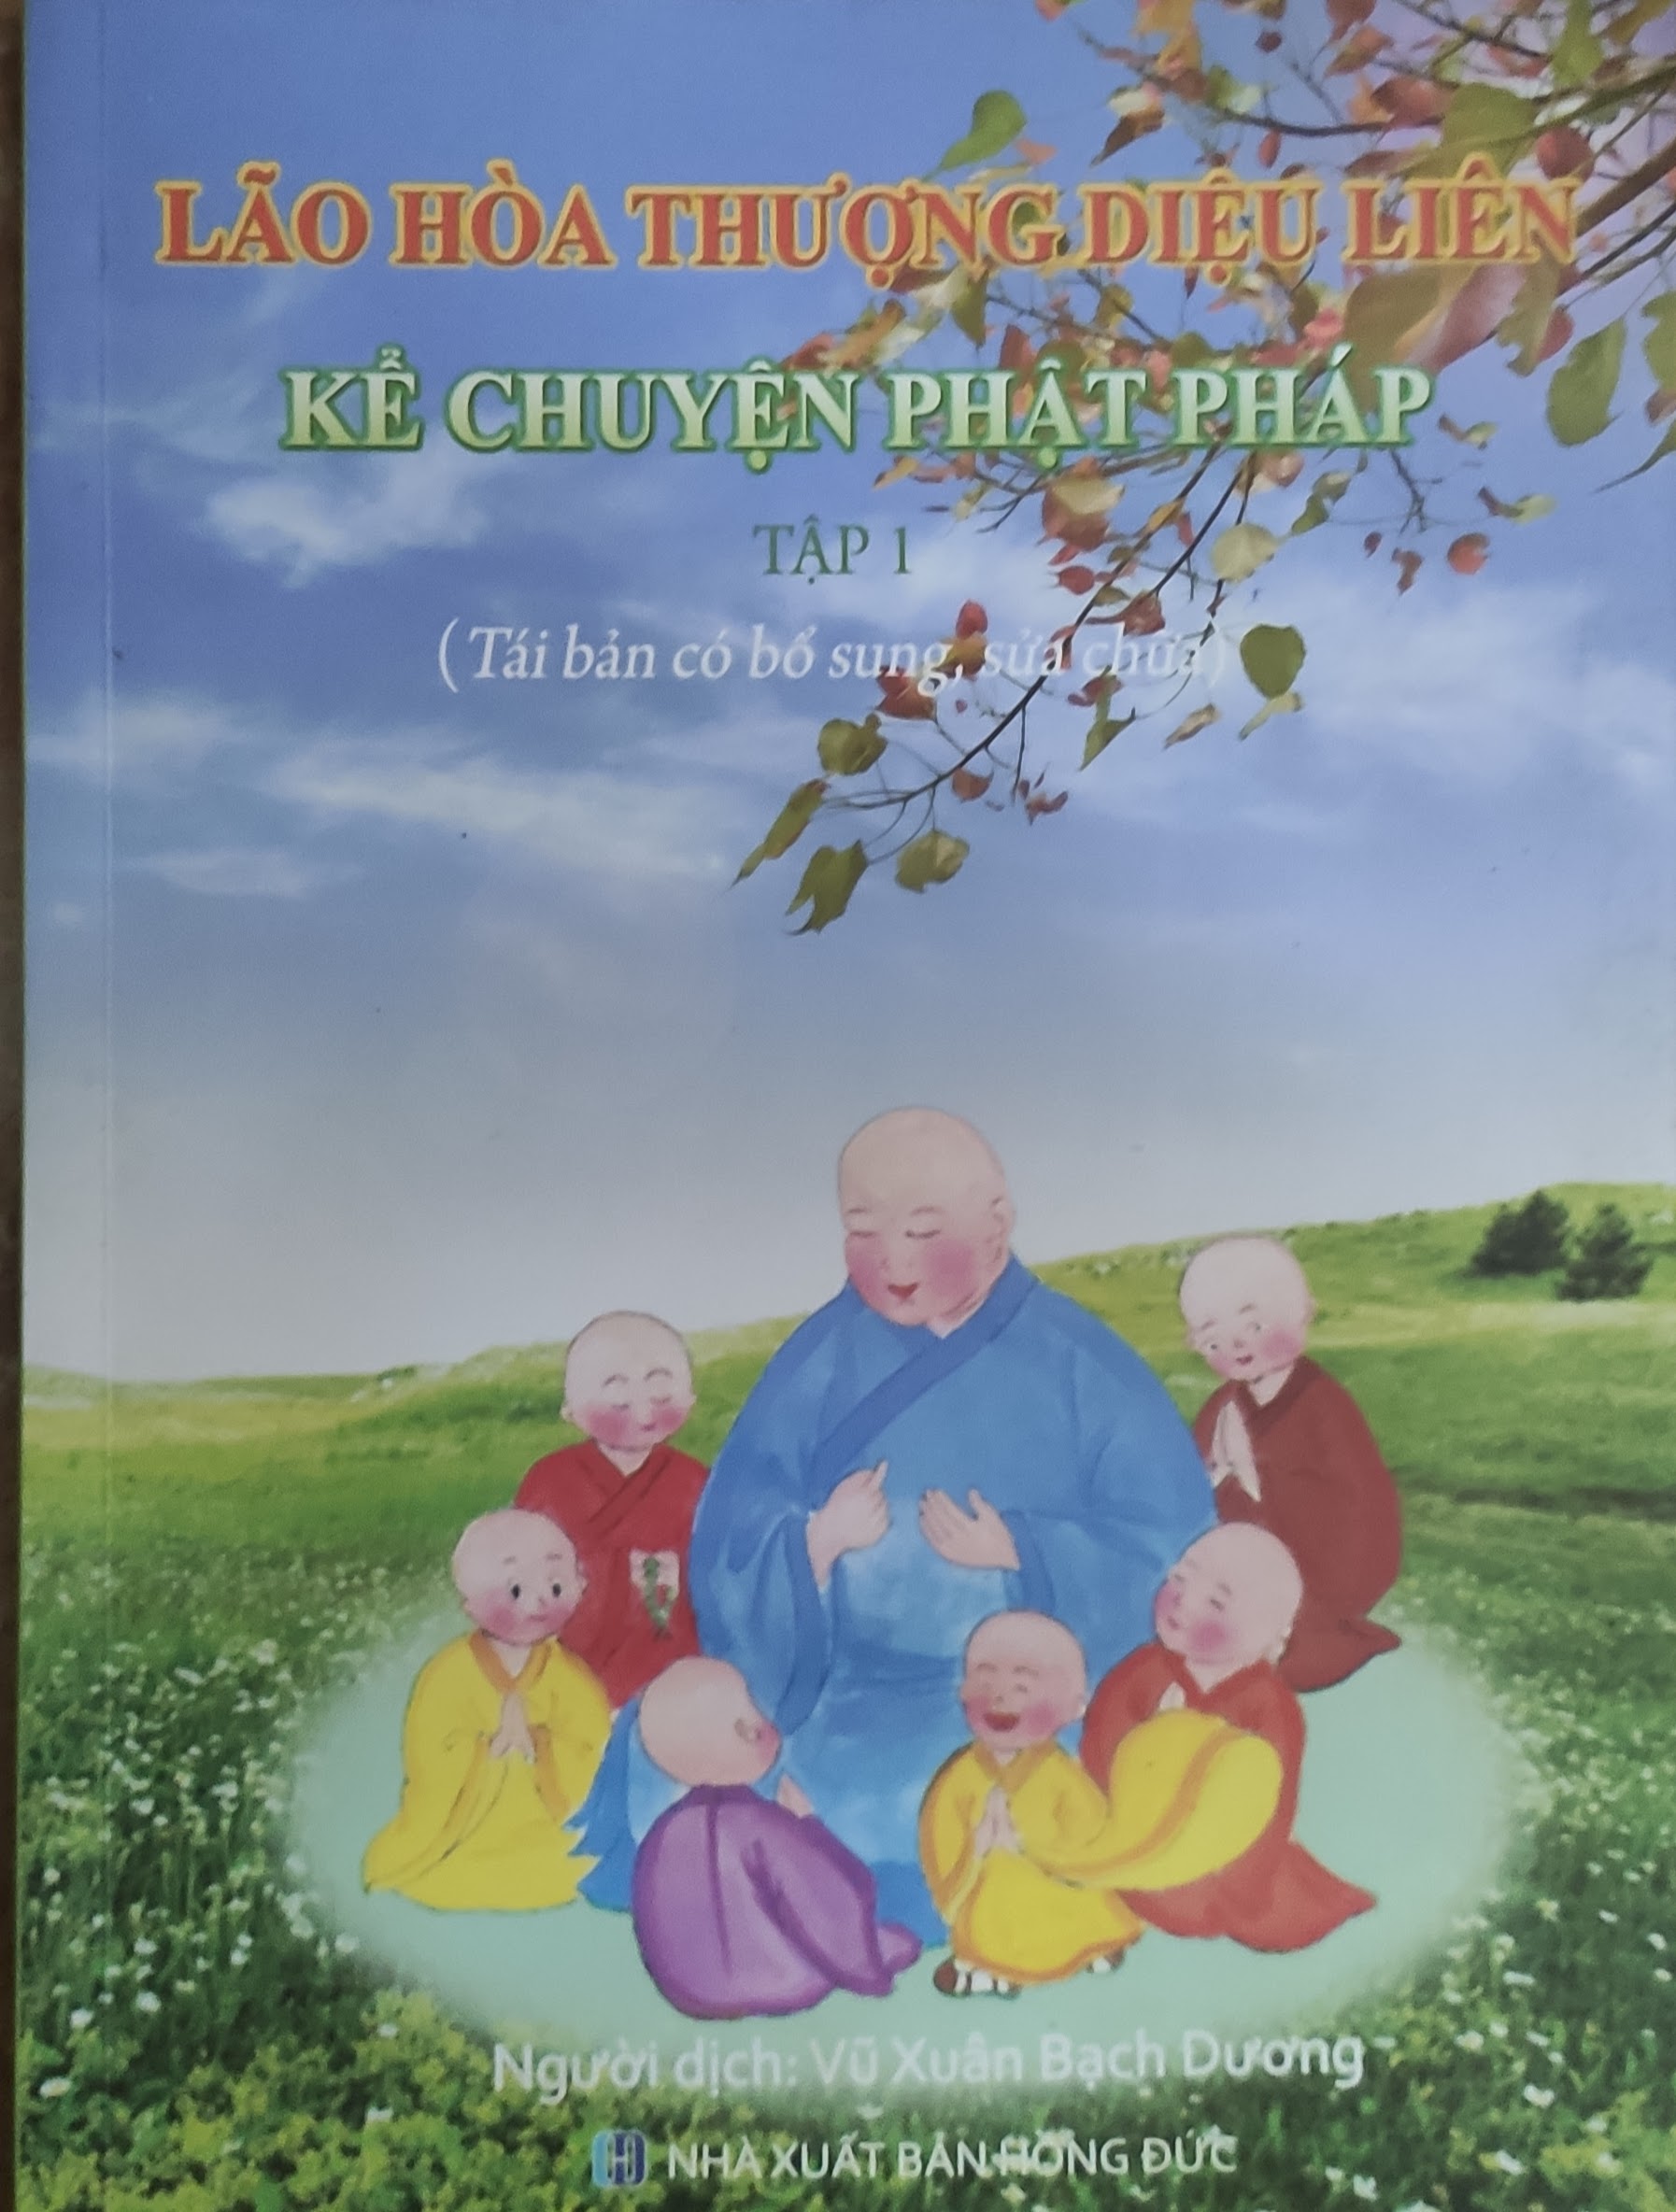 Lão hoà thượng Diệu Liên kể chuyện Phật pháp (tập 1)